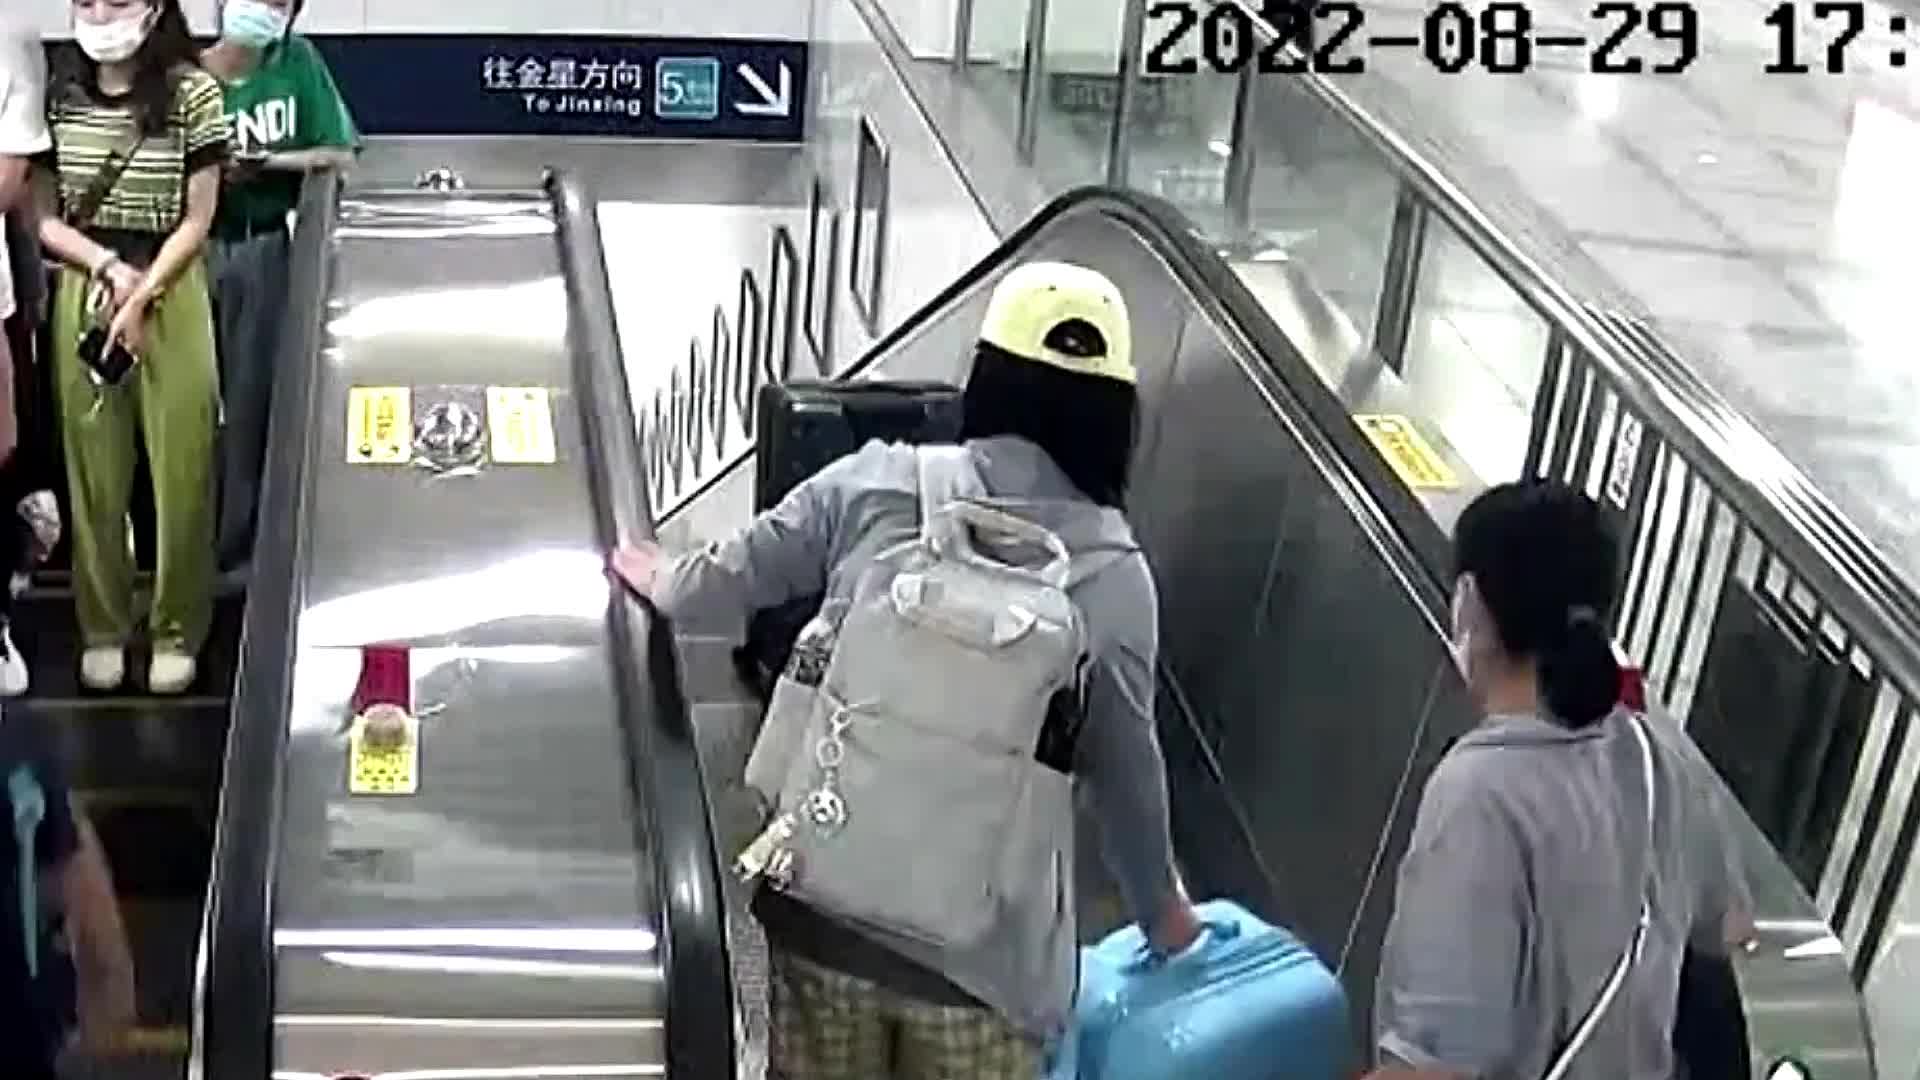 Video - Clip: Bất ngờ bị chiếc vali hất tung khi đang đi thang cuốn, người phụ nữ thoát nạn khó tin 